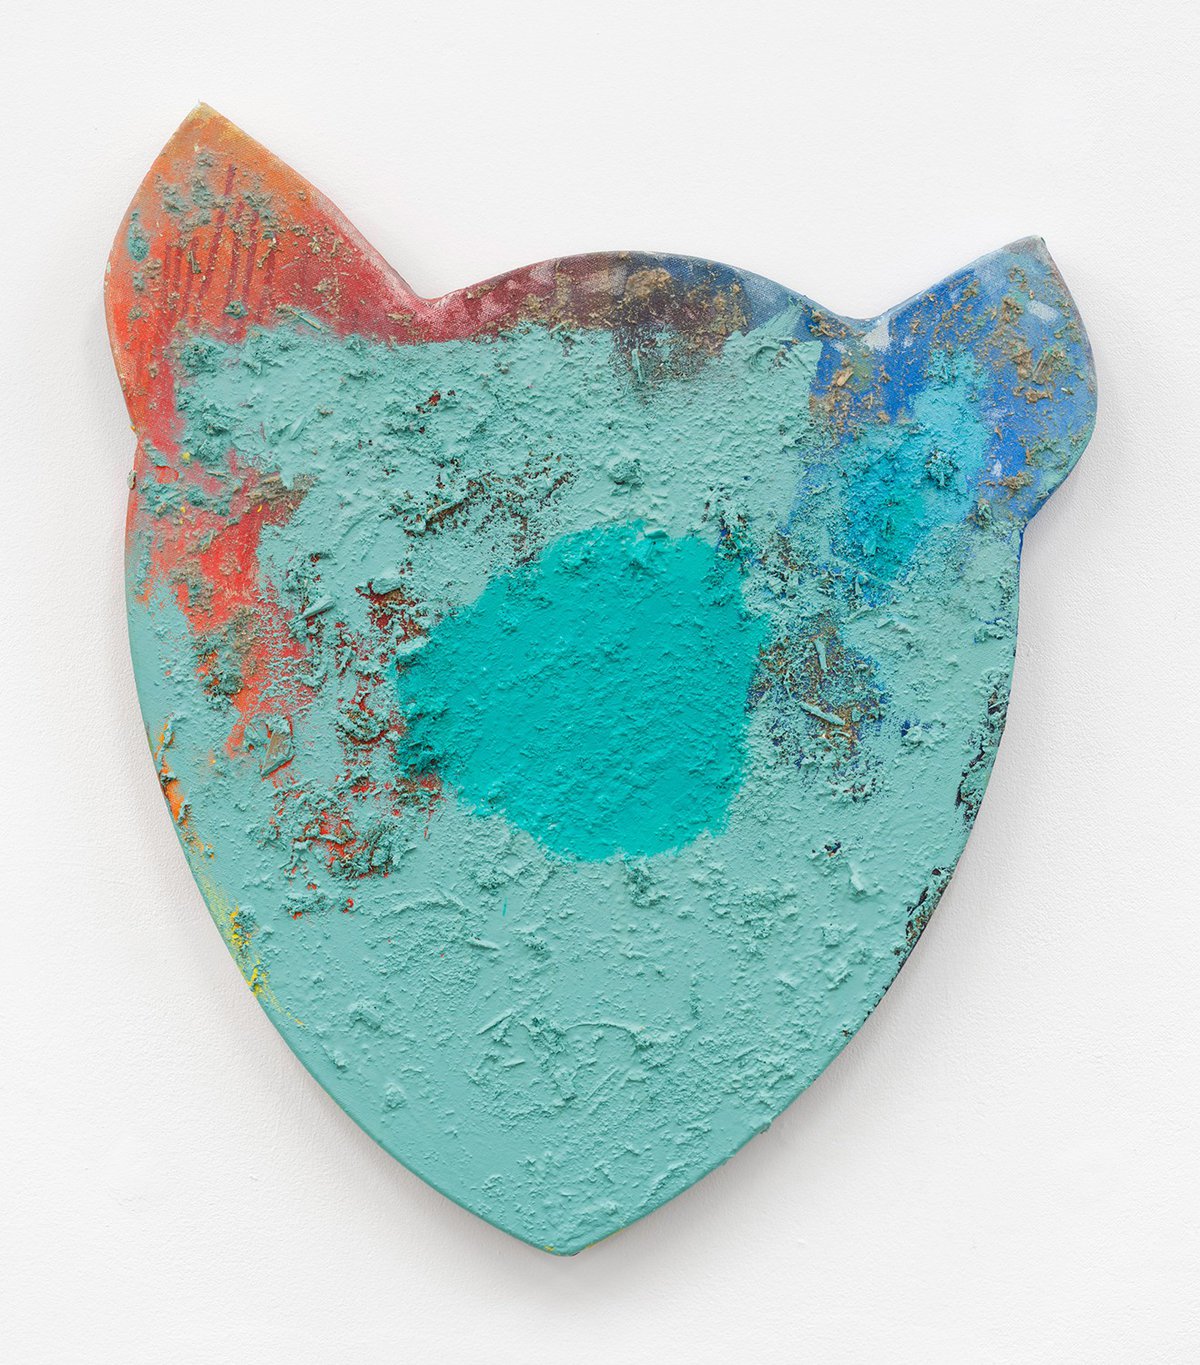 Franz AmannNo.1, 2014Oil, sawdust and glue on shaped canvas88 x 74 x 5 cm